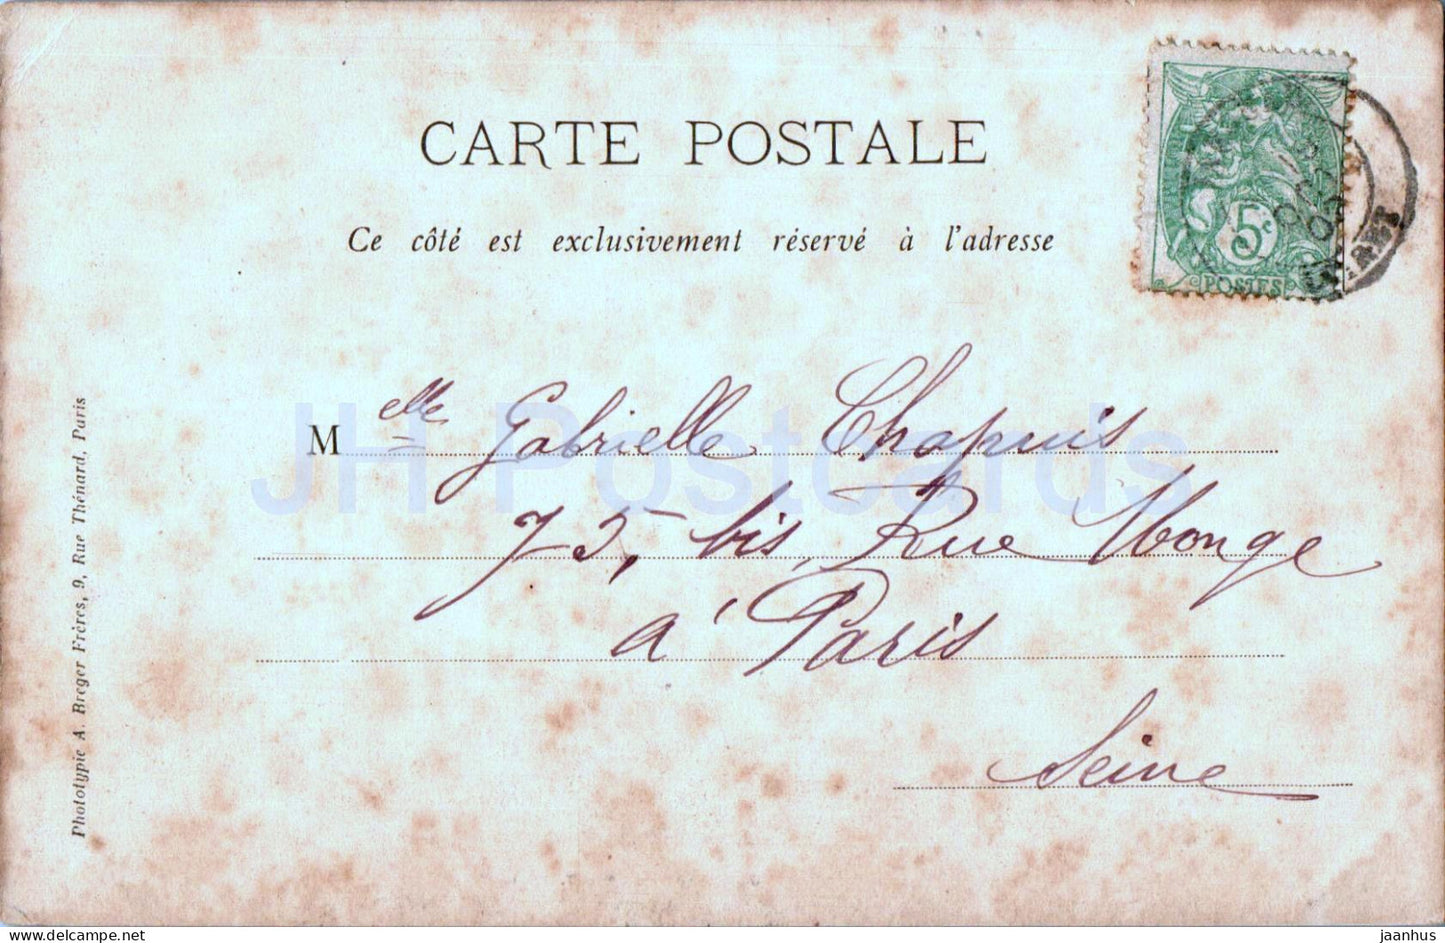 Jargeau - Pont de la Loire - bridge - 1902 - old postcard - France - used